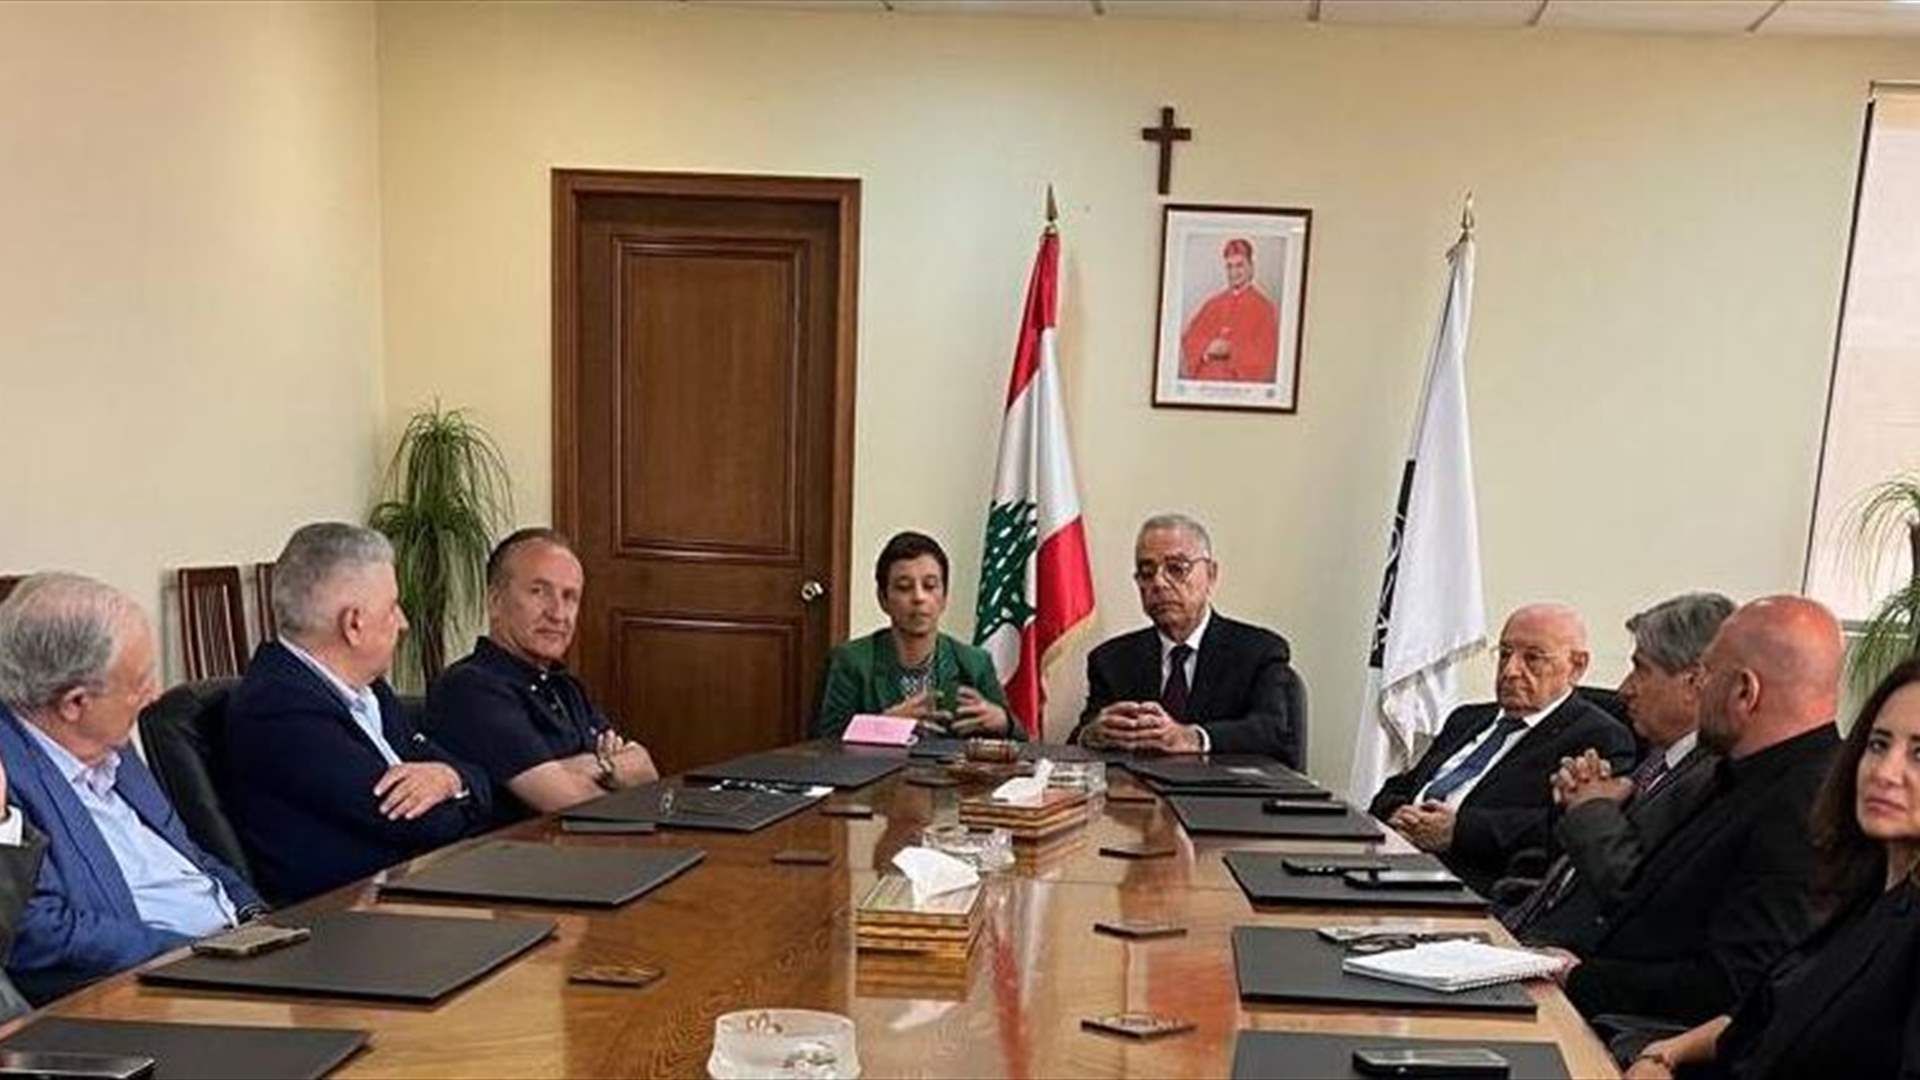 سفيرة قبرص لدى لبنان: الرئيس القبرصي وعد بدعم قضايا لبنان في المجموعة الاوروبية والمحافل الدولية